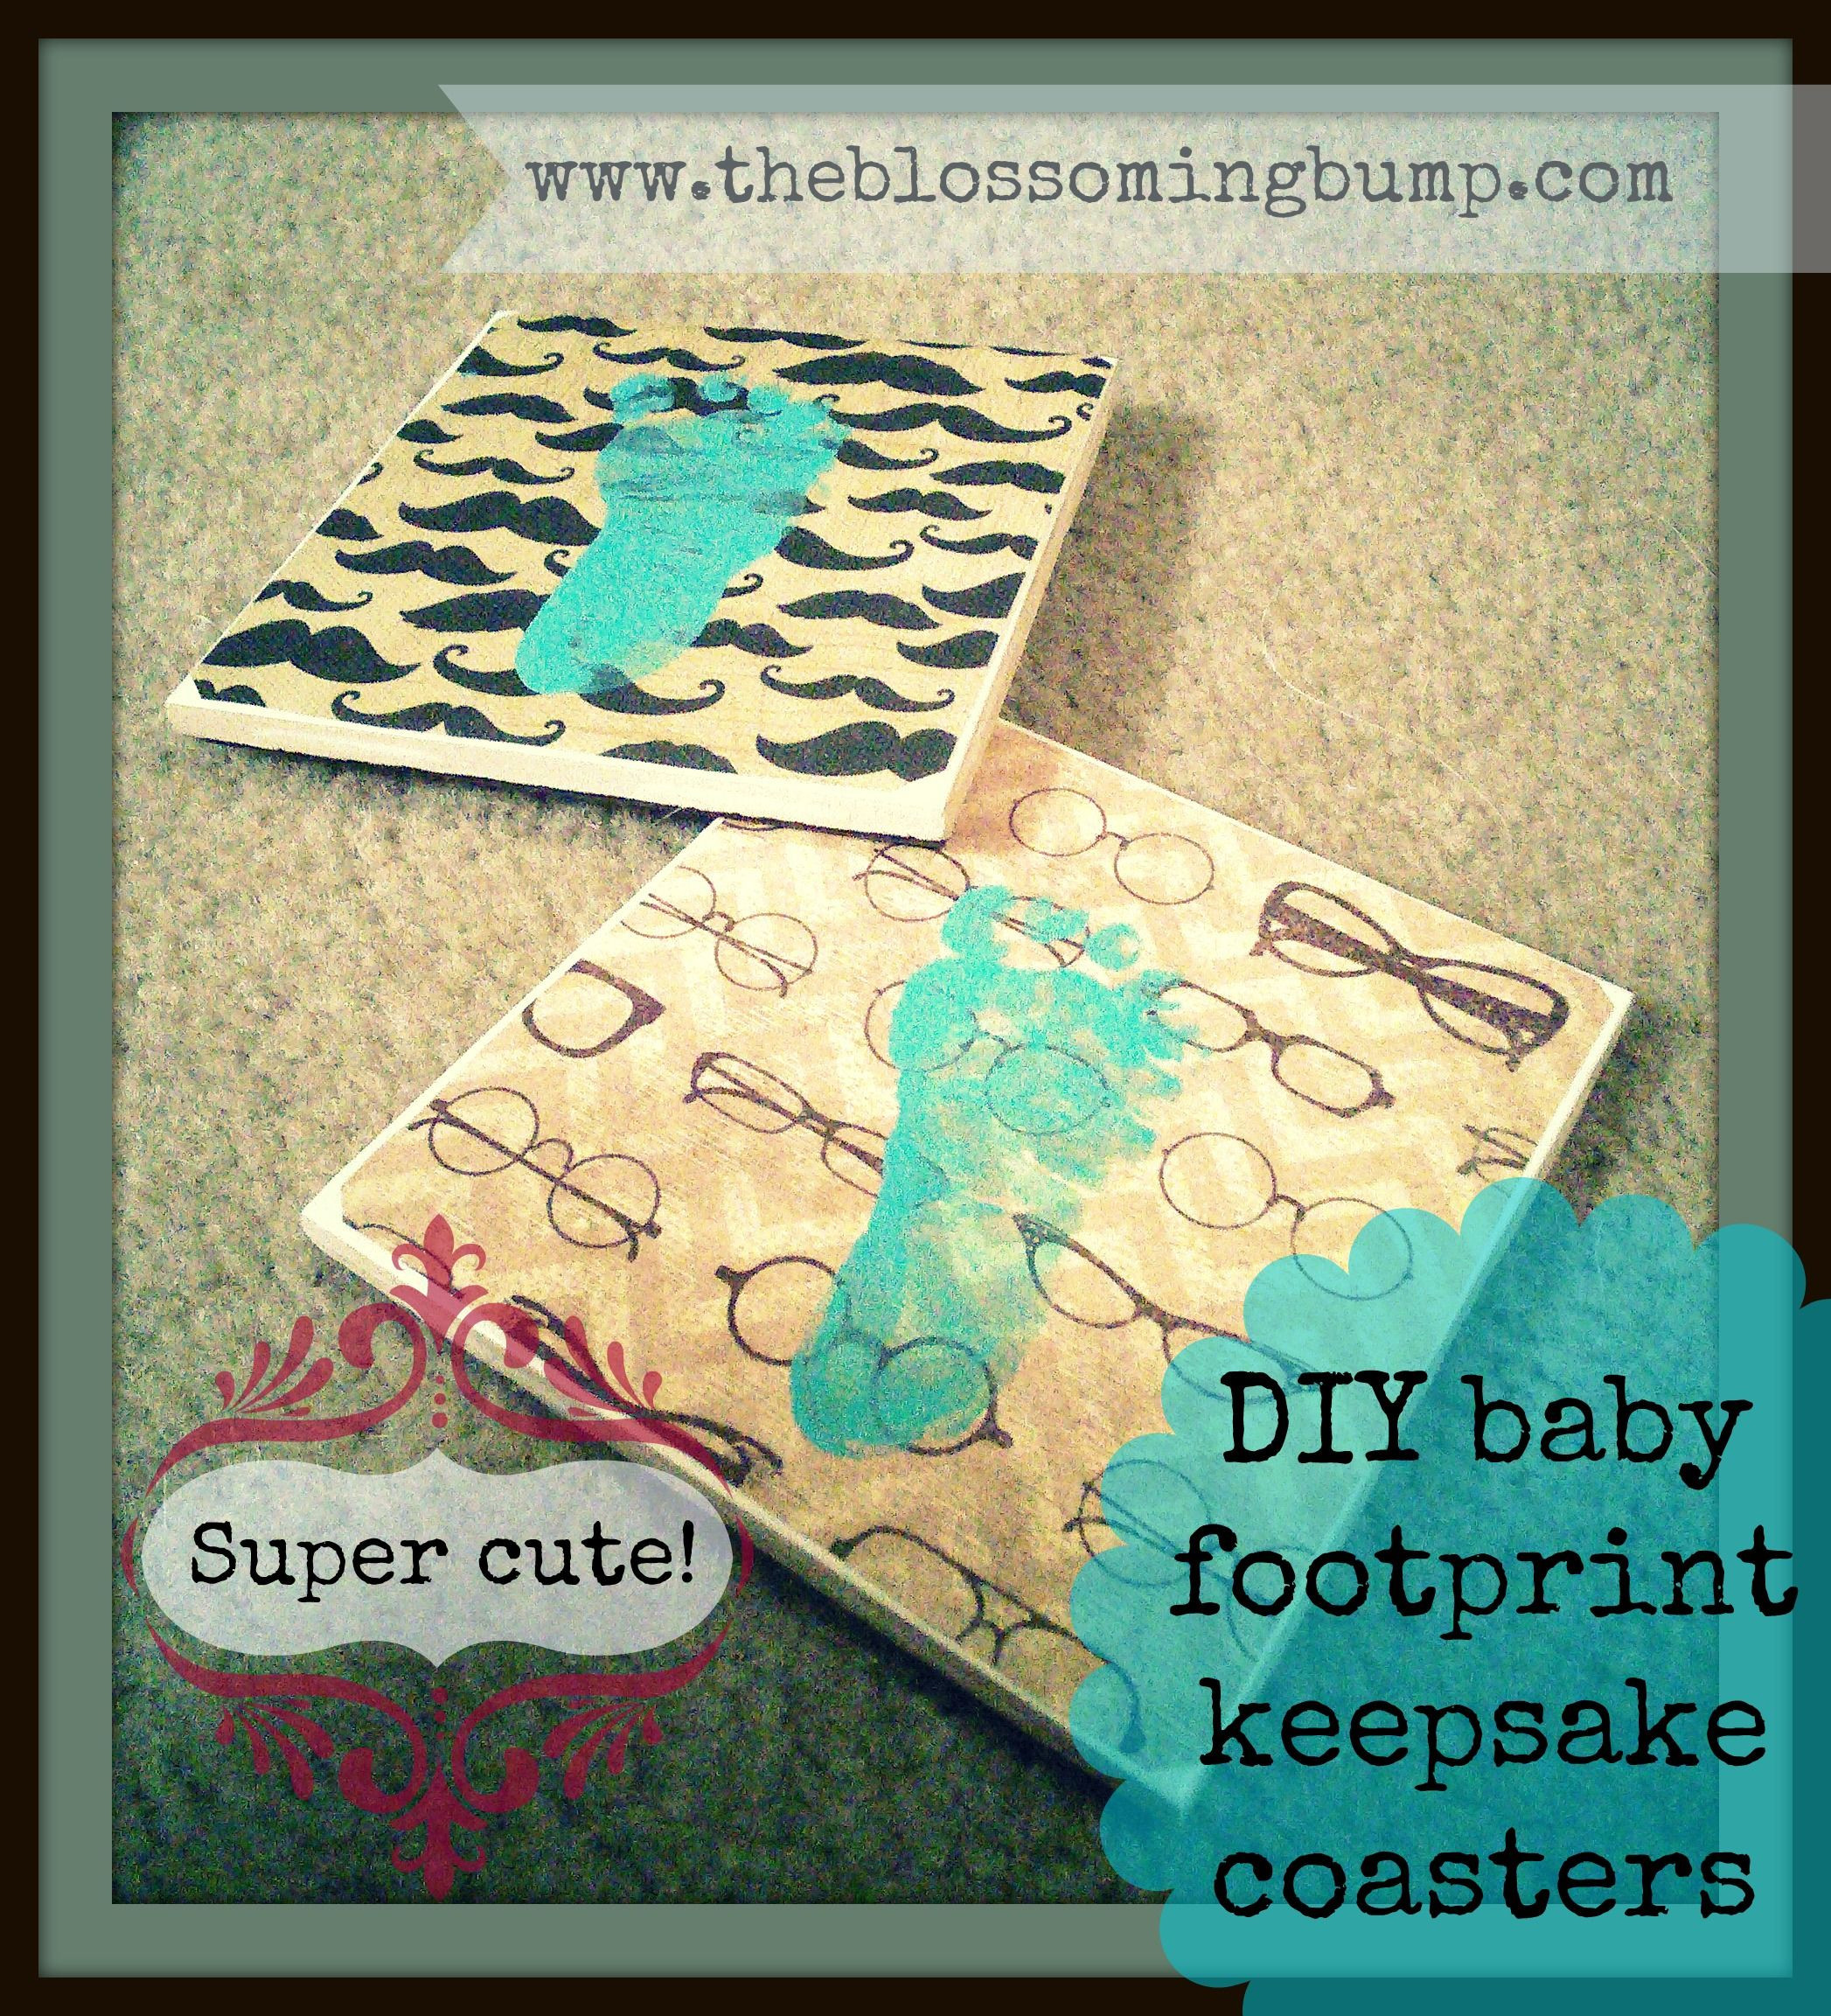 DIY Baby Footprints
 Super cute DIY baby footprint keepsake coasters and other